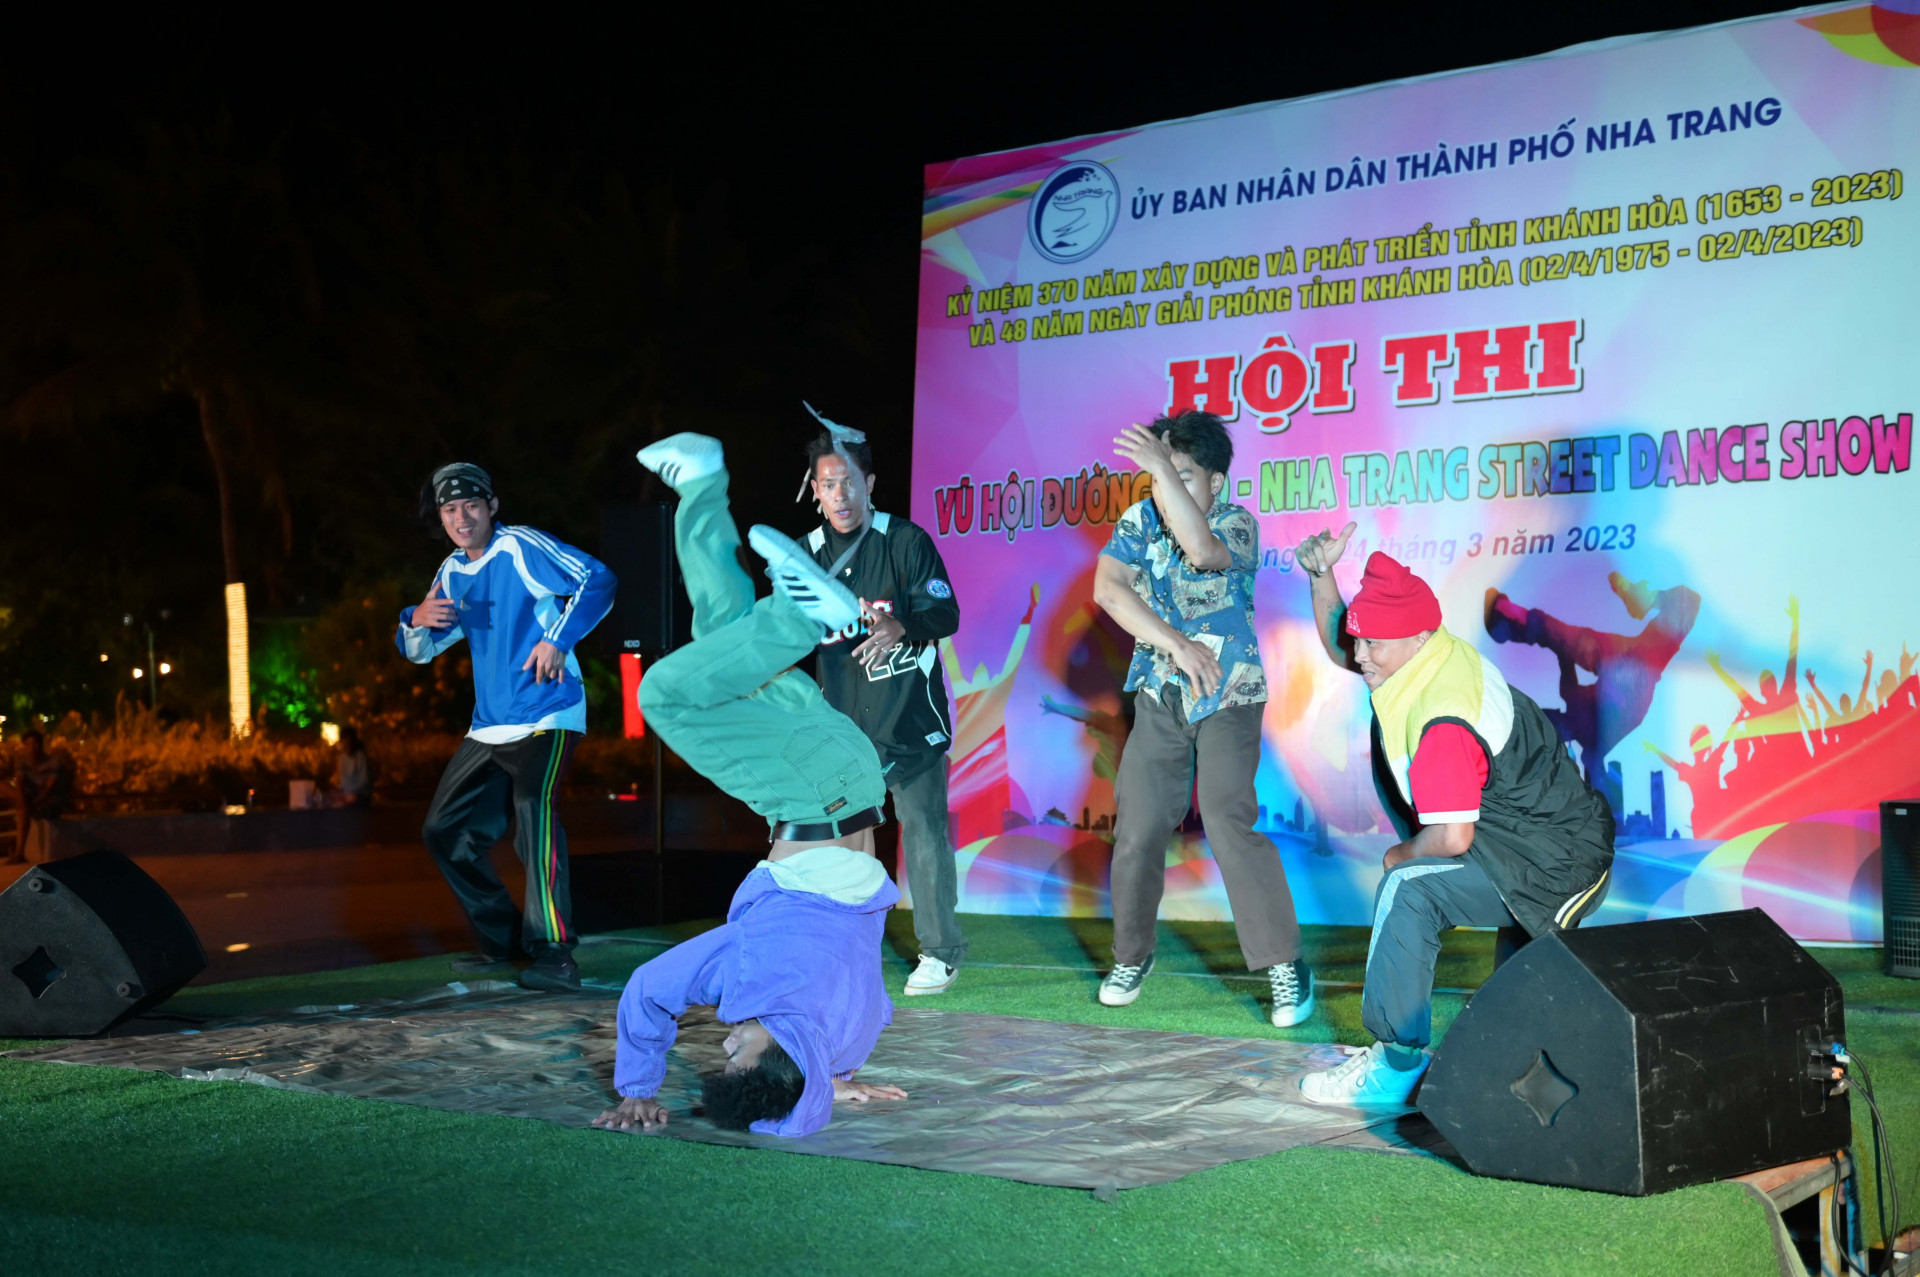 Mở đầu hội thi, nhóm nhảy G.T.A Boyz mang đến không khí sôi động, bốc lửa với màn biểu diễn nhảy, hịp hop  "We are B-boy "